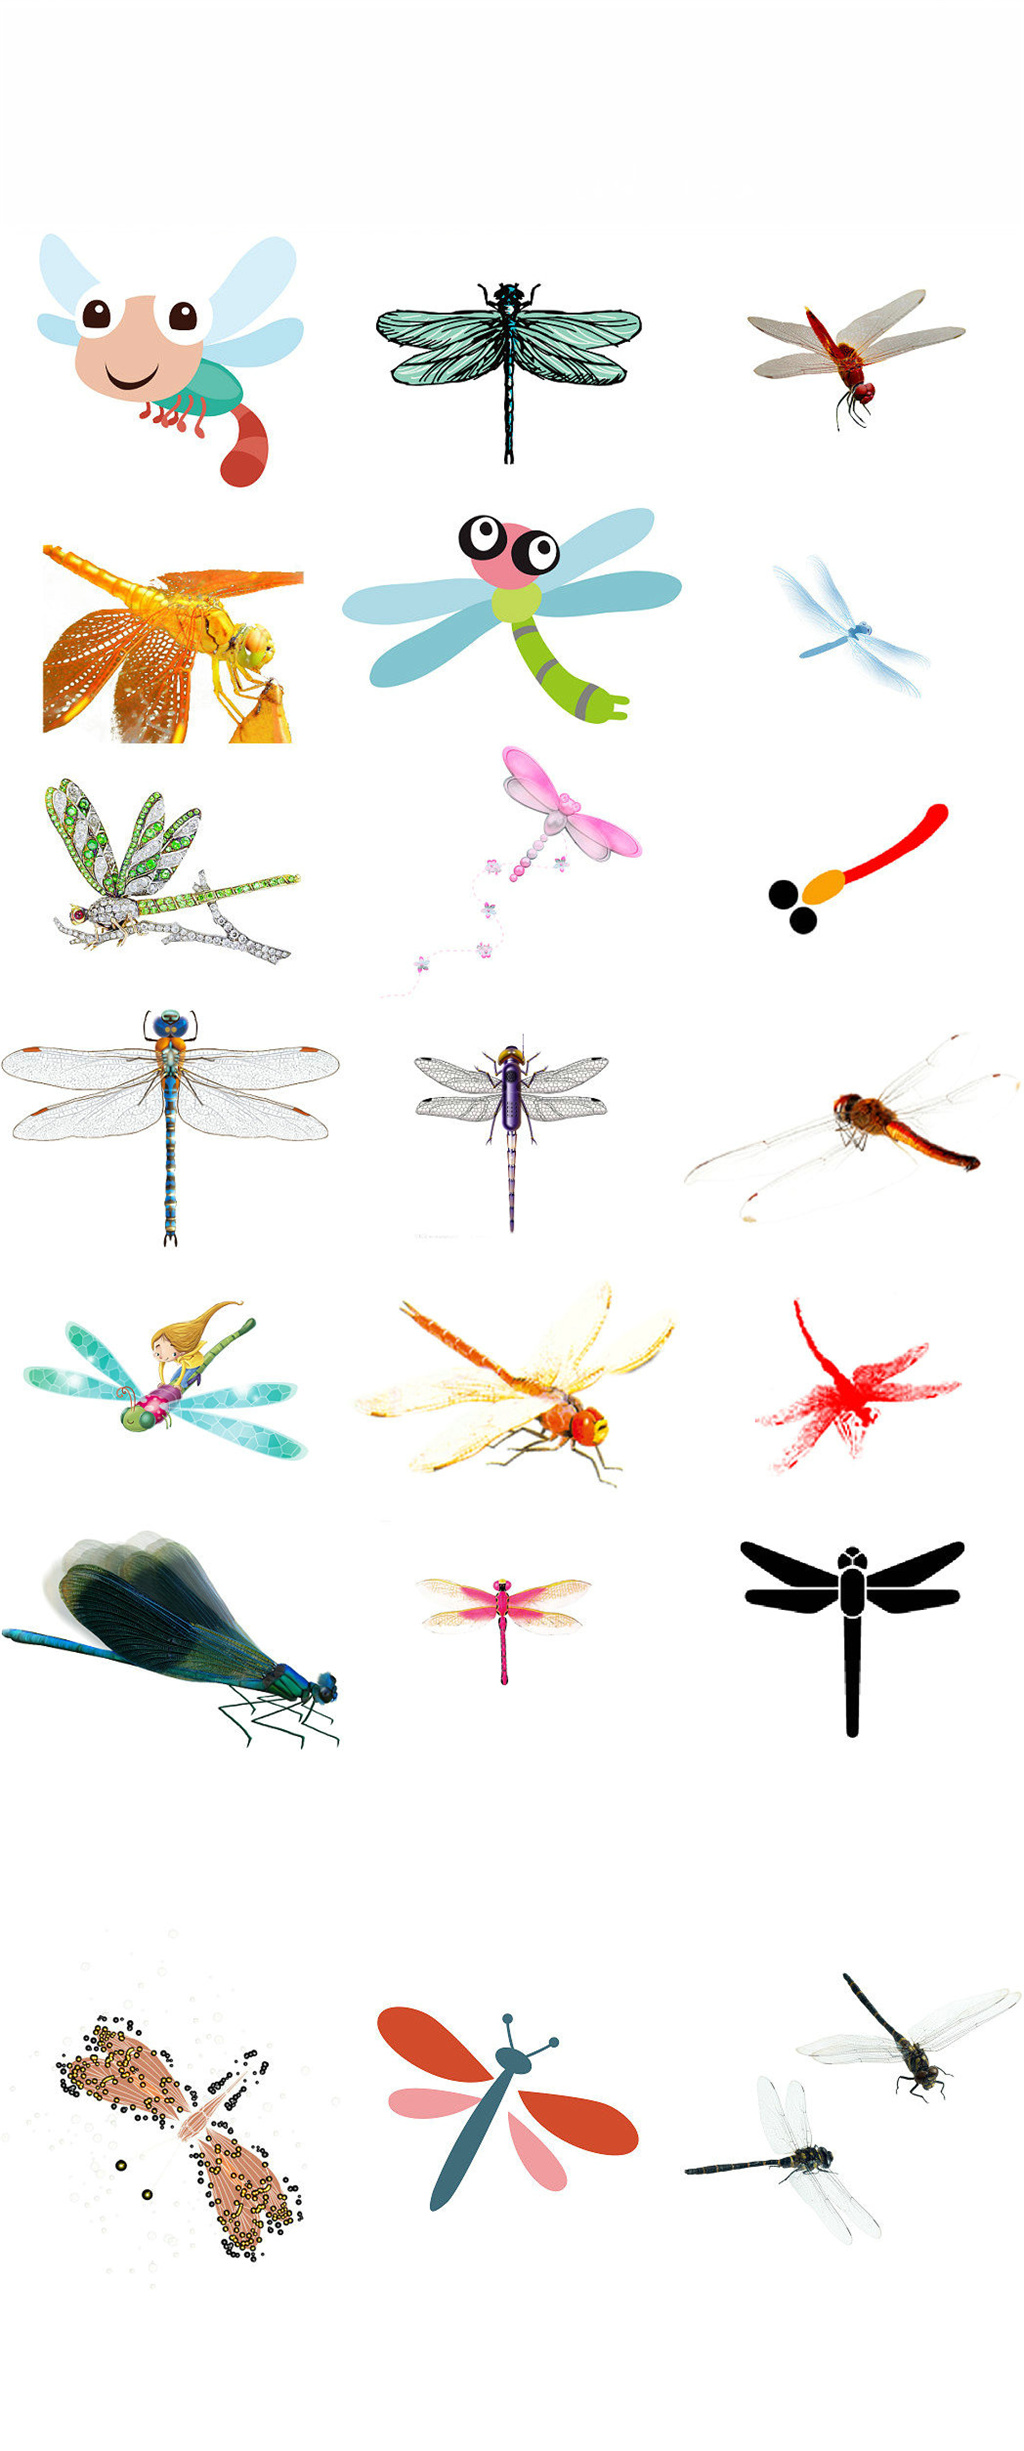 可爱的蜻蜓卡通动物画素材